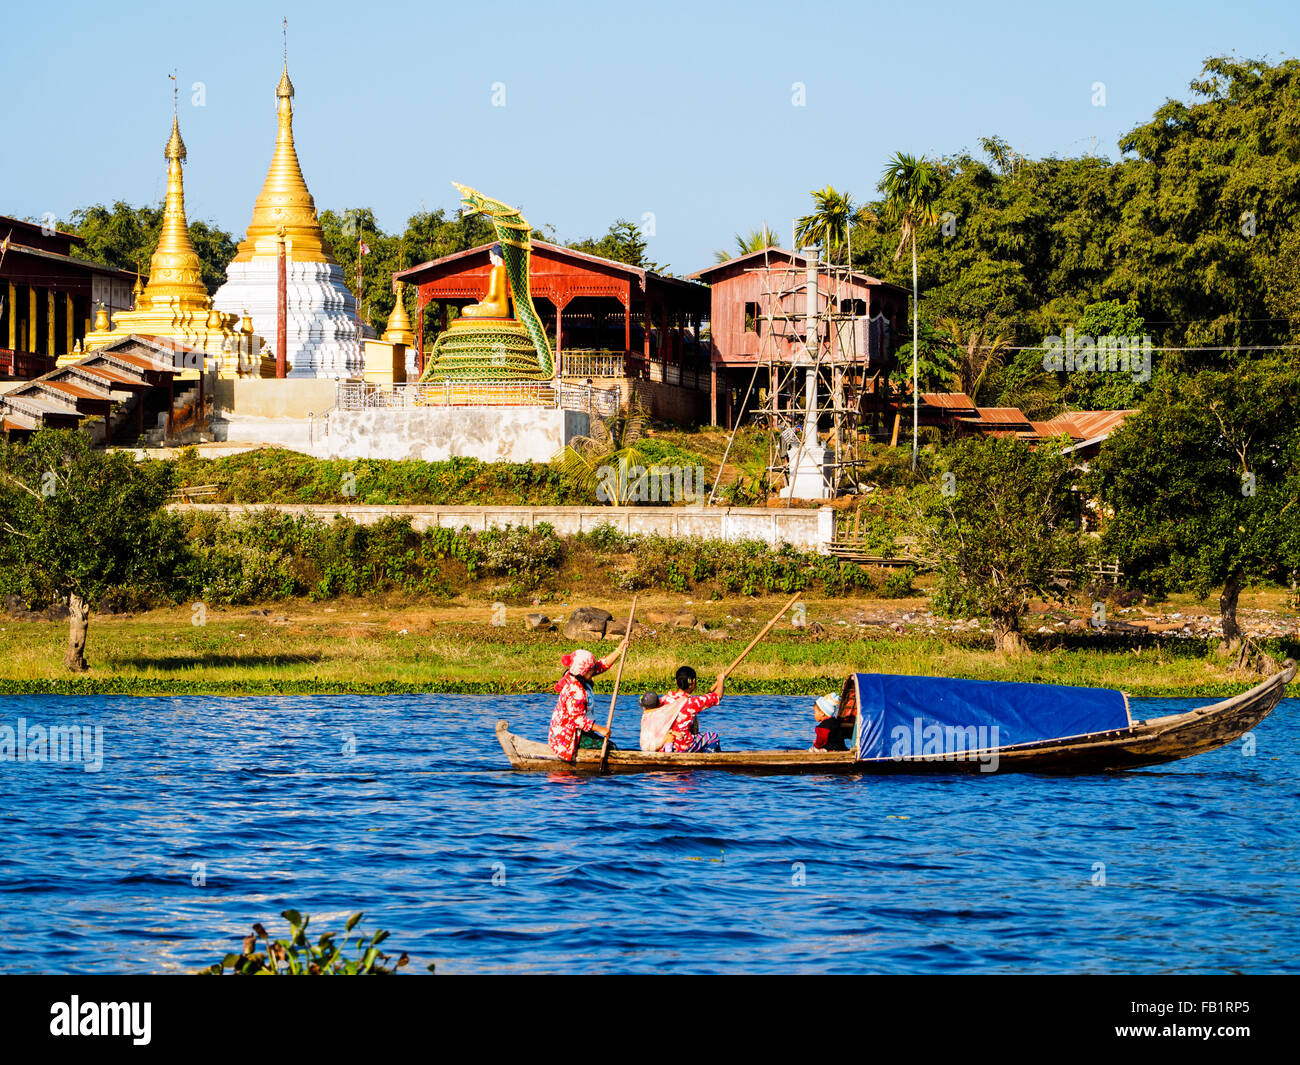 Boating along the lake-side village of Indawgyi Lake. Stock Photo